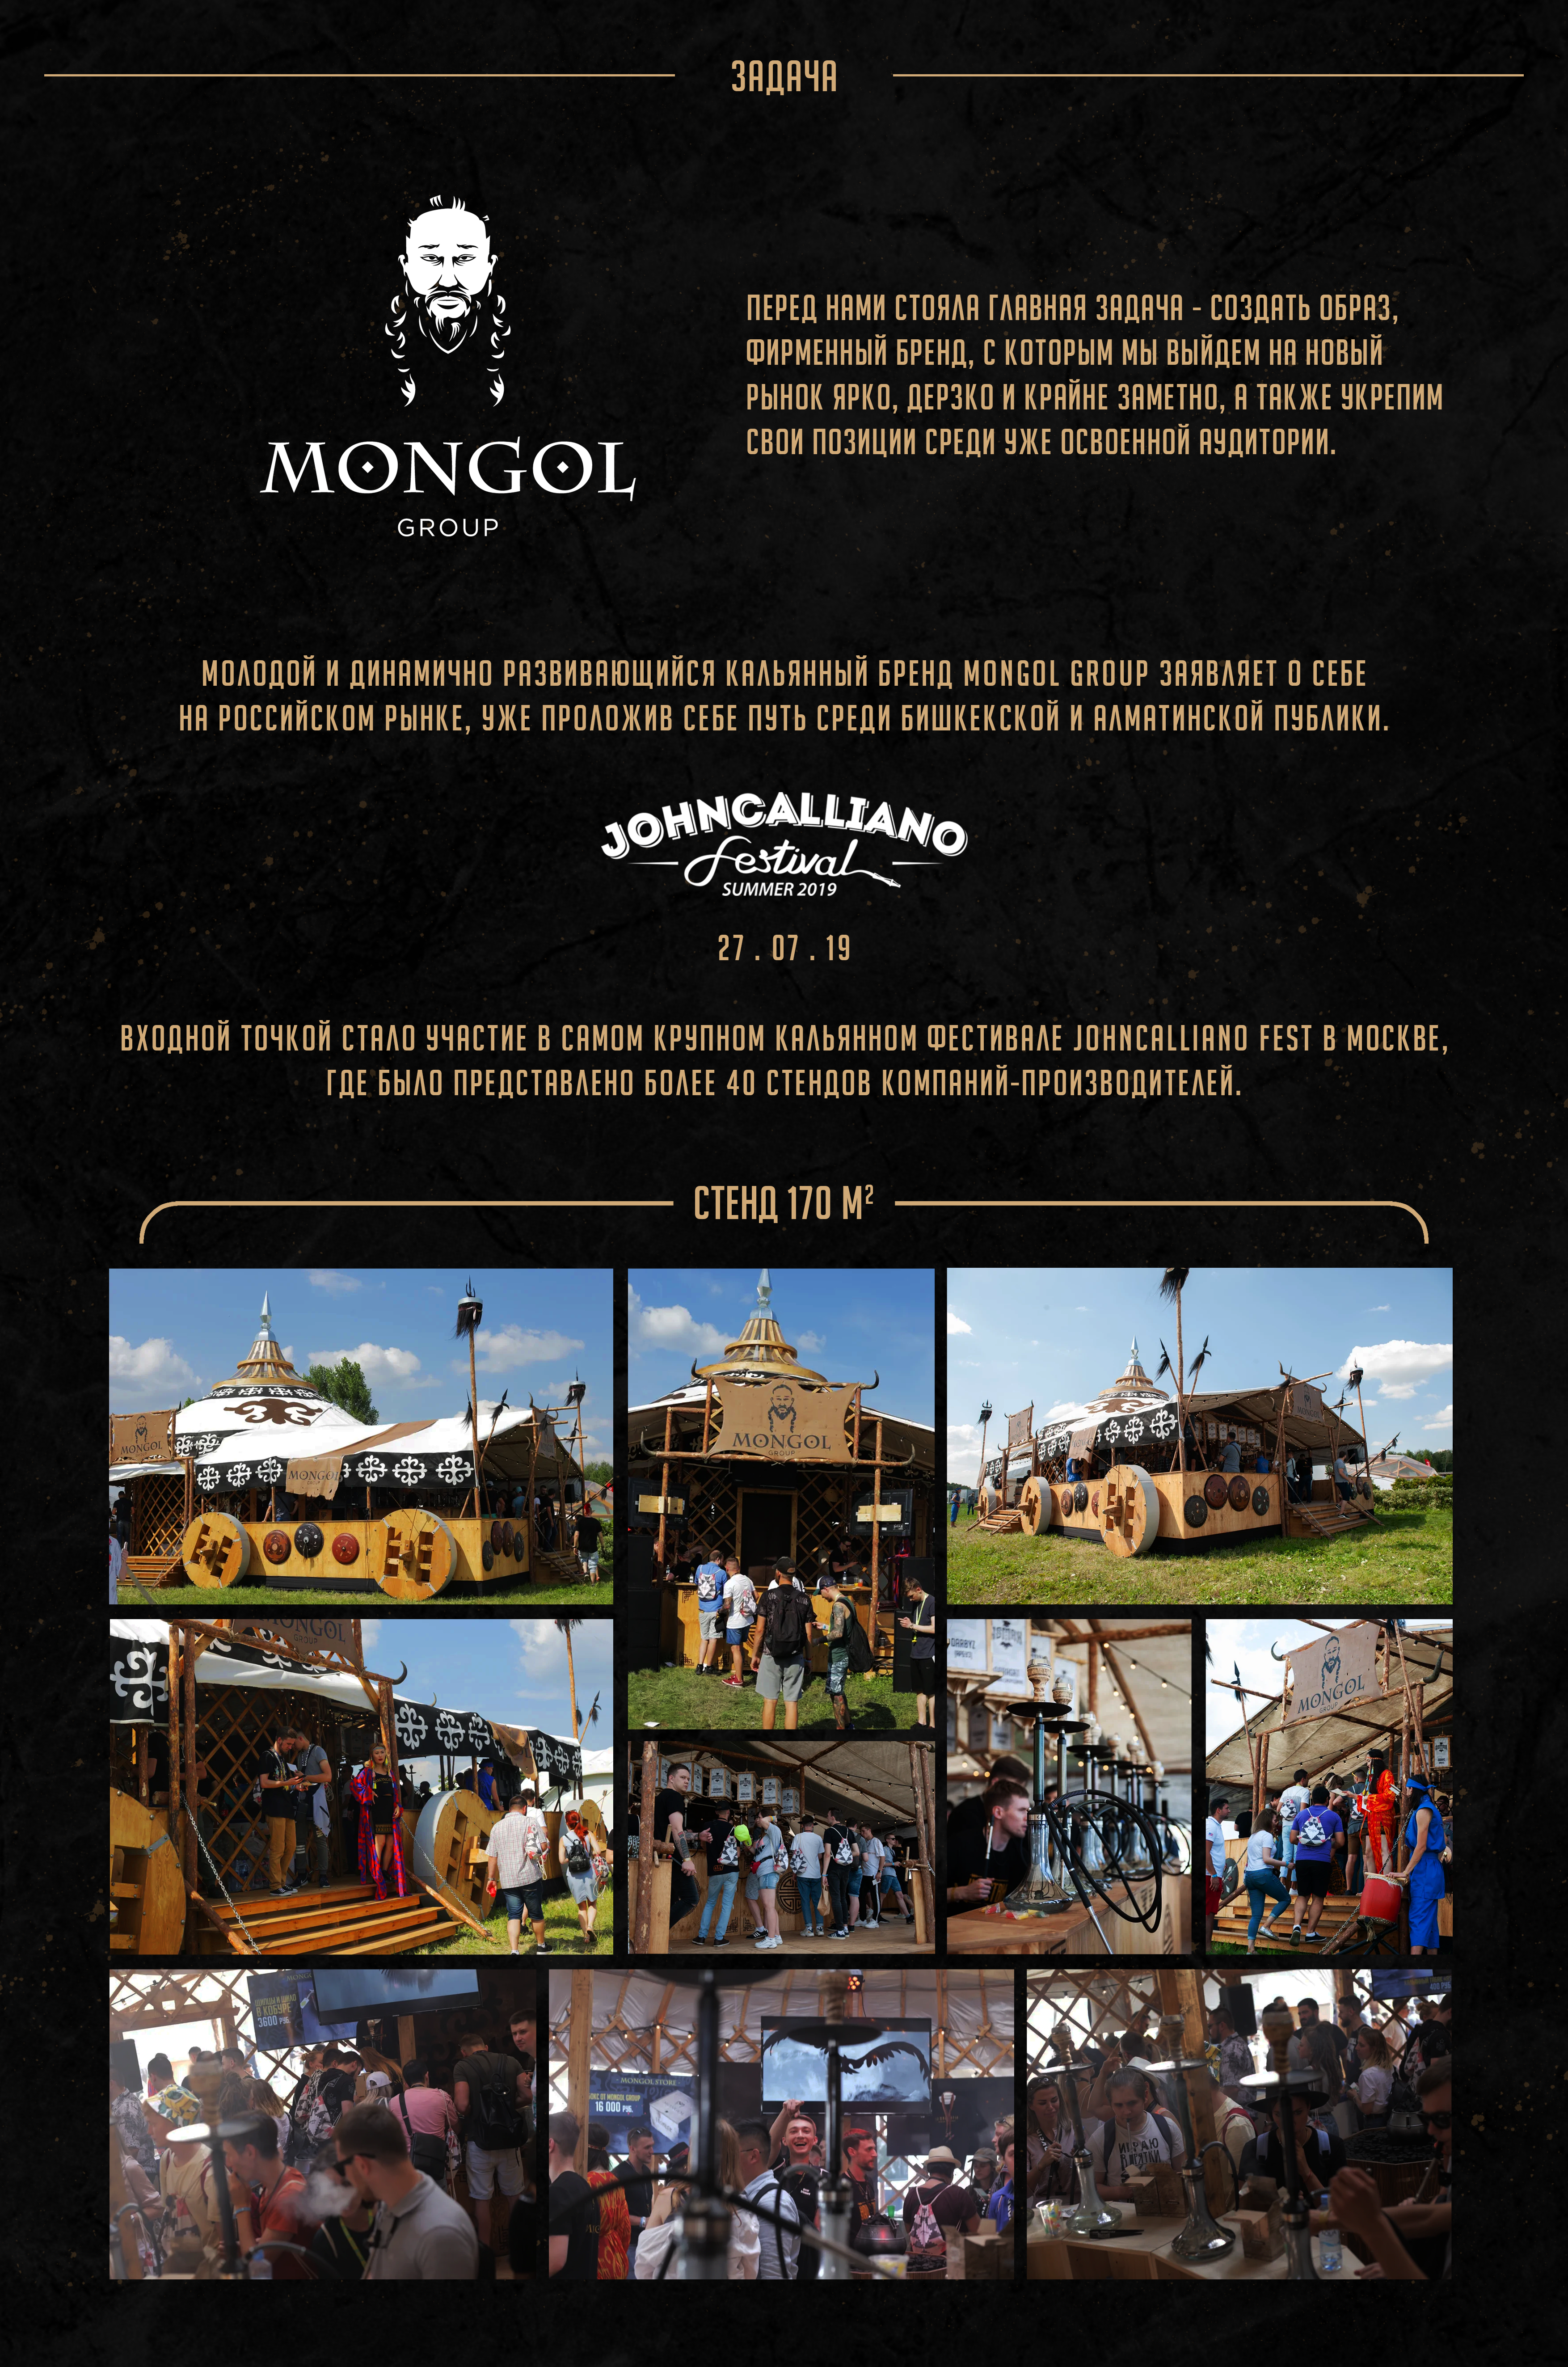 Mongol Group shisha company